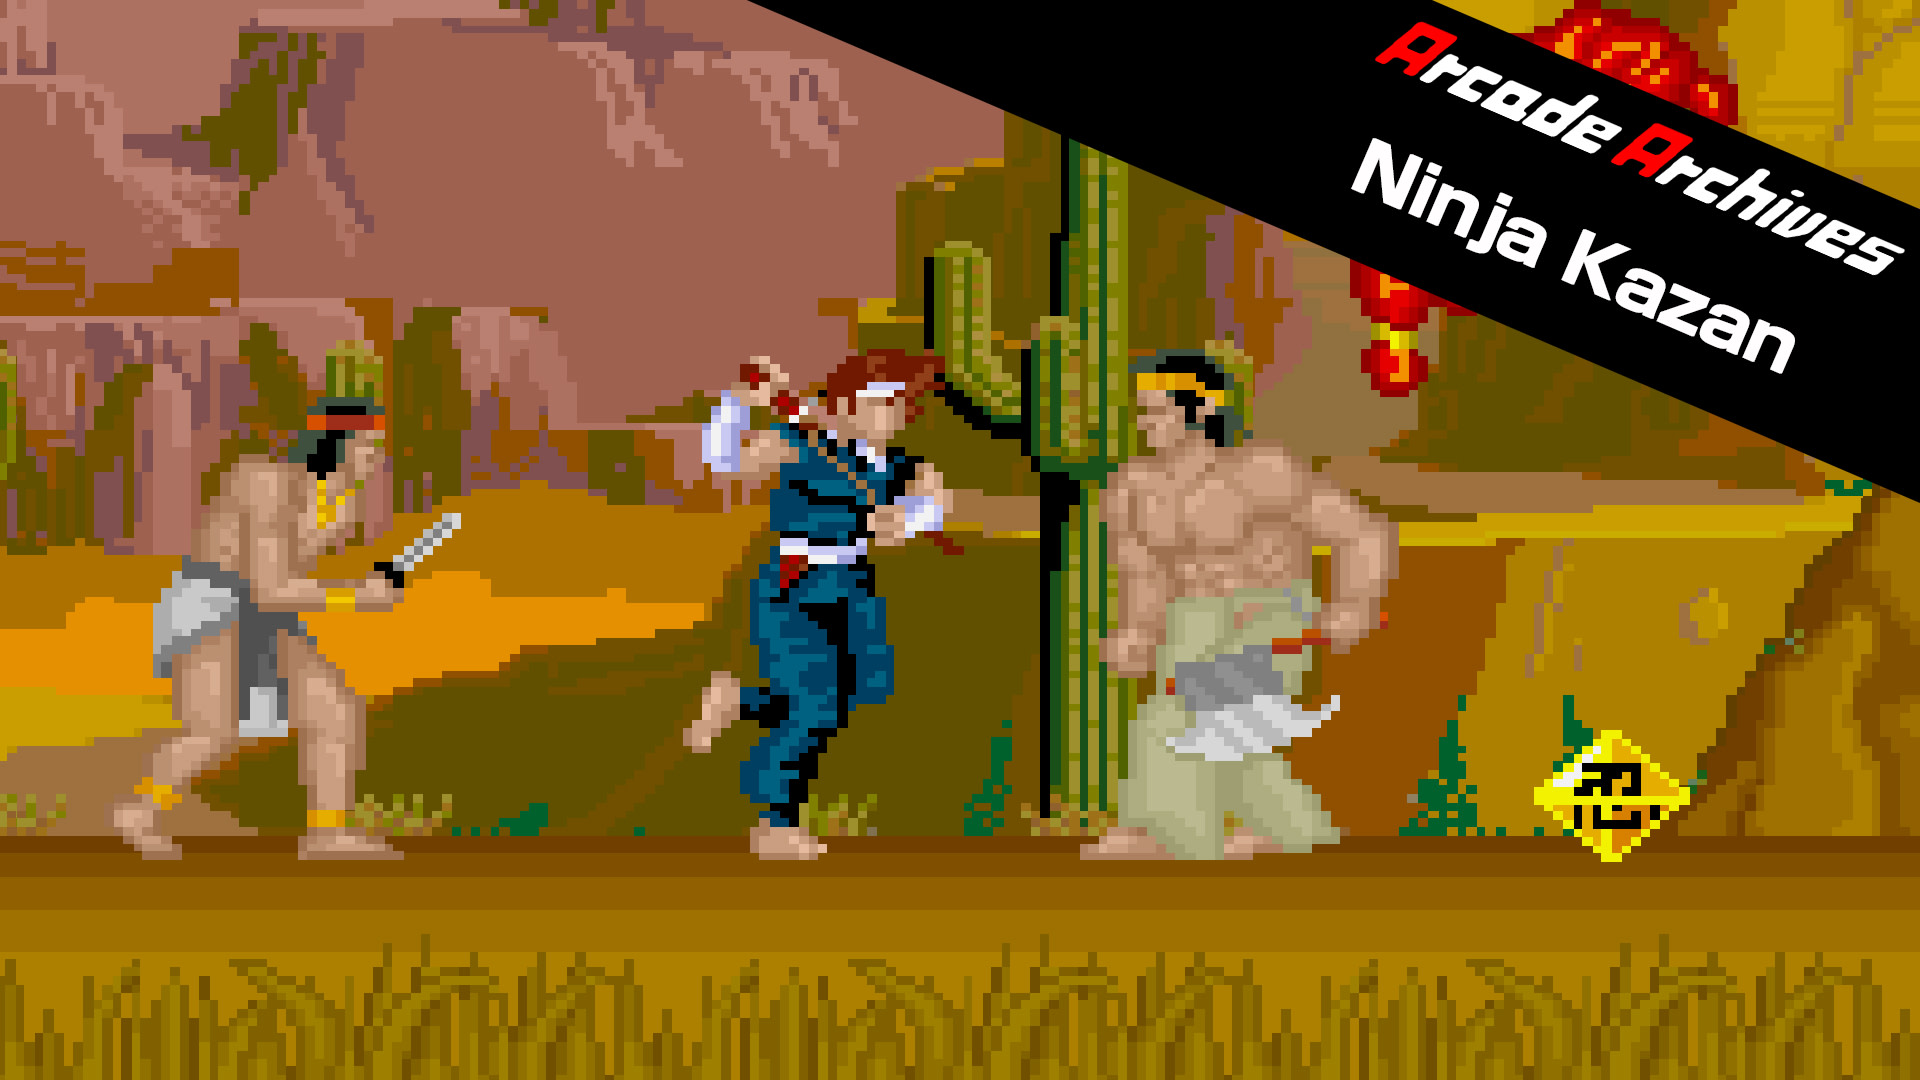 Arcade Archives Ninja Kazan